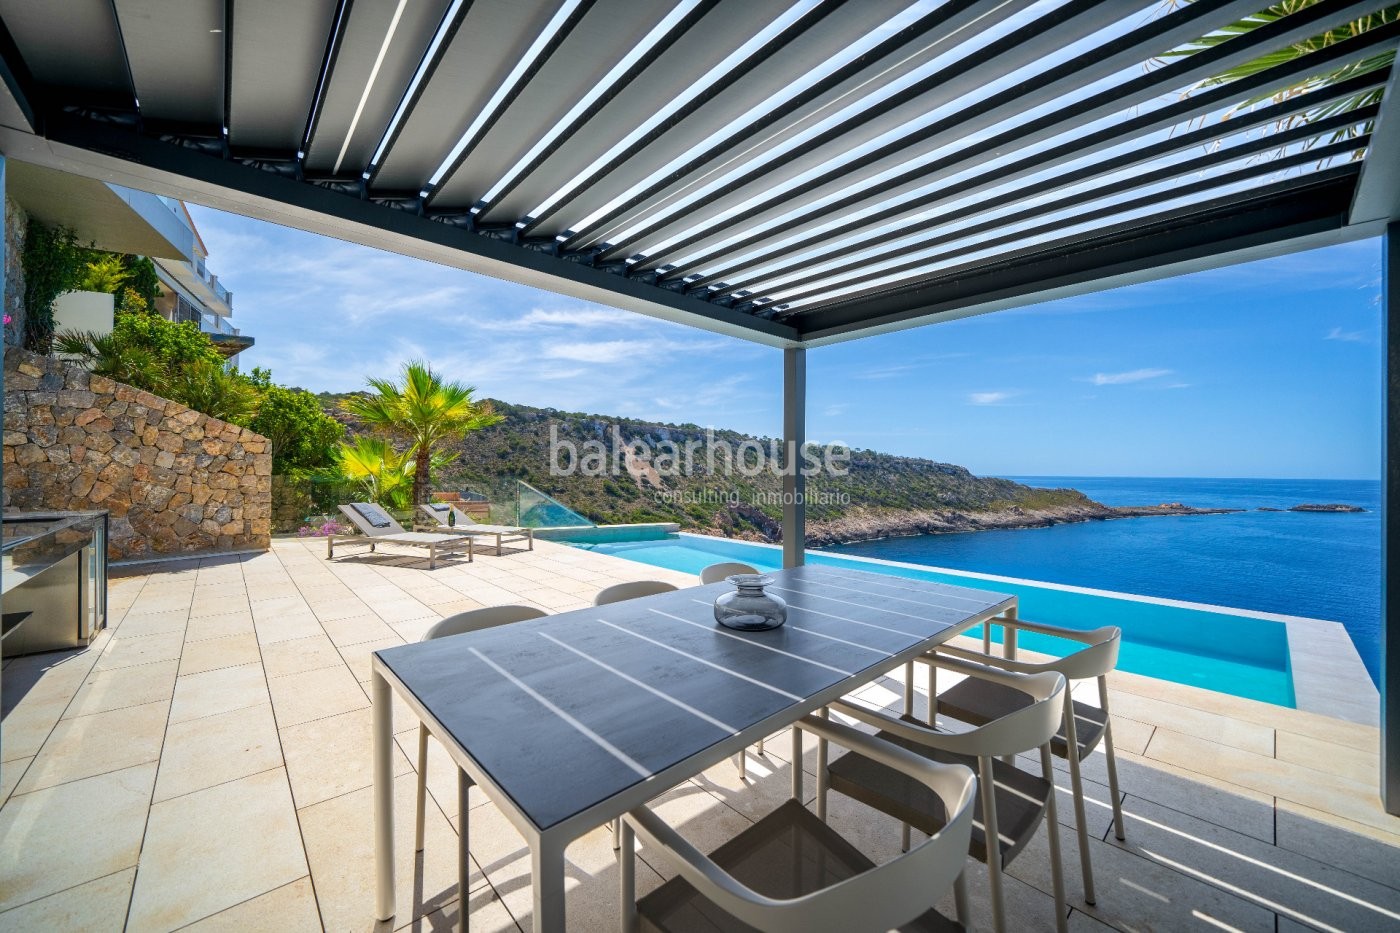 Beeindruckende Villa direkt am Meer mit spektakulärem Blick auf das Mittelmeer.